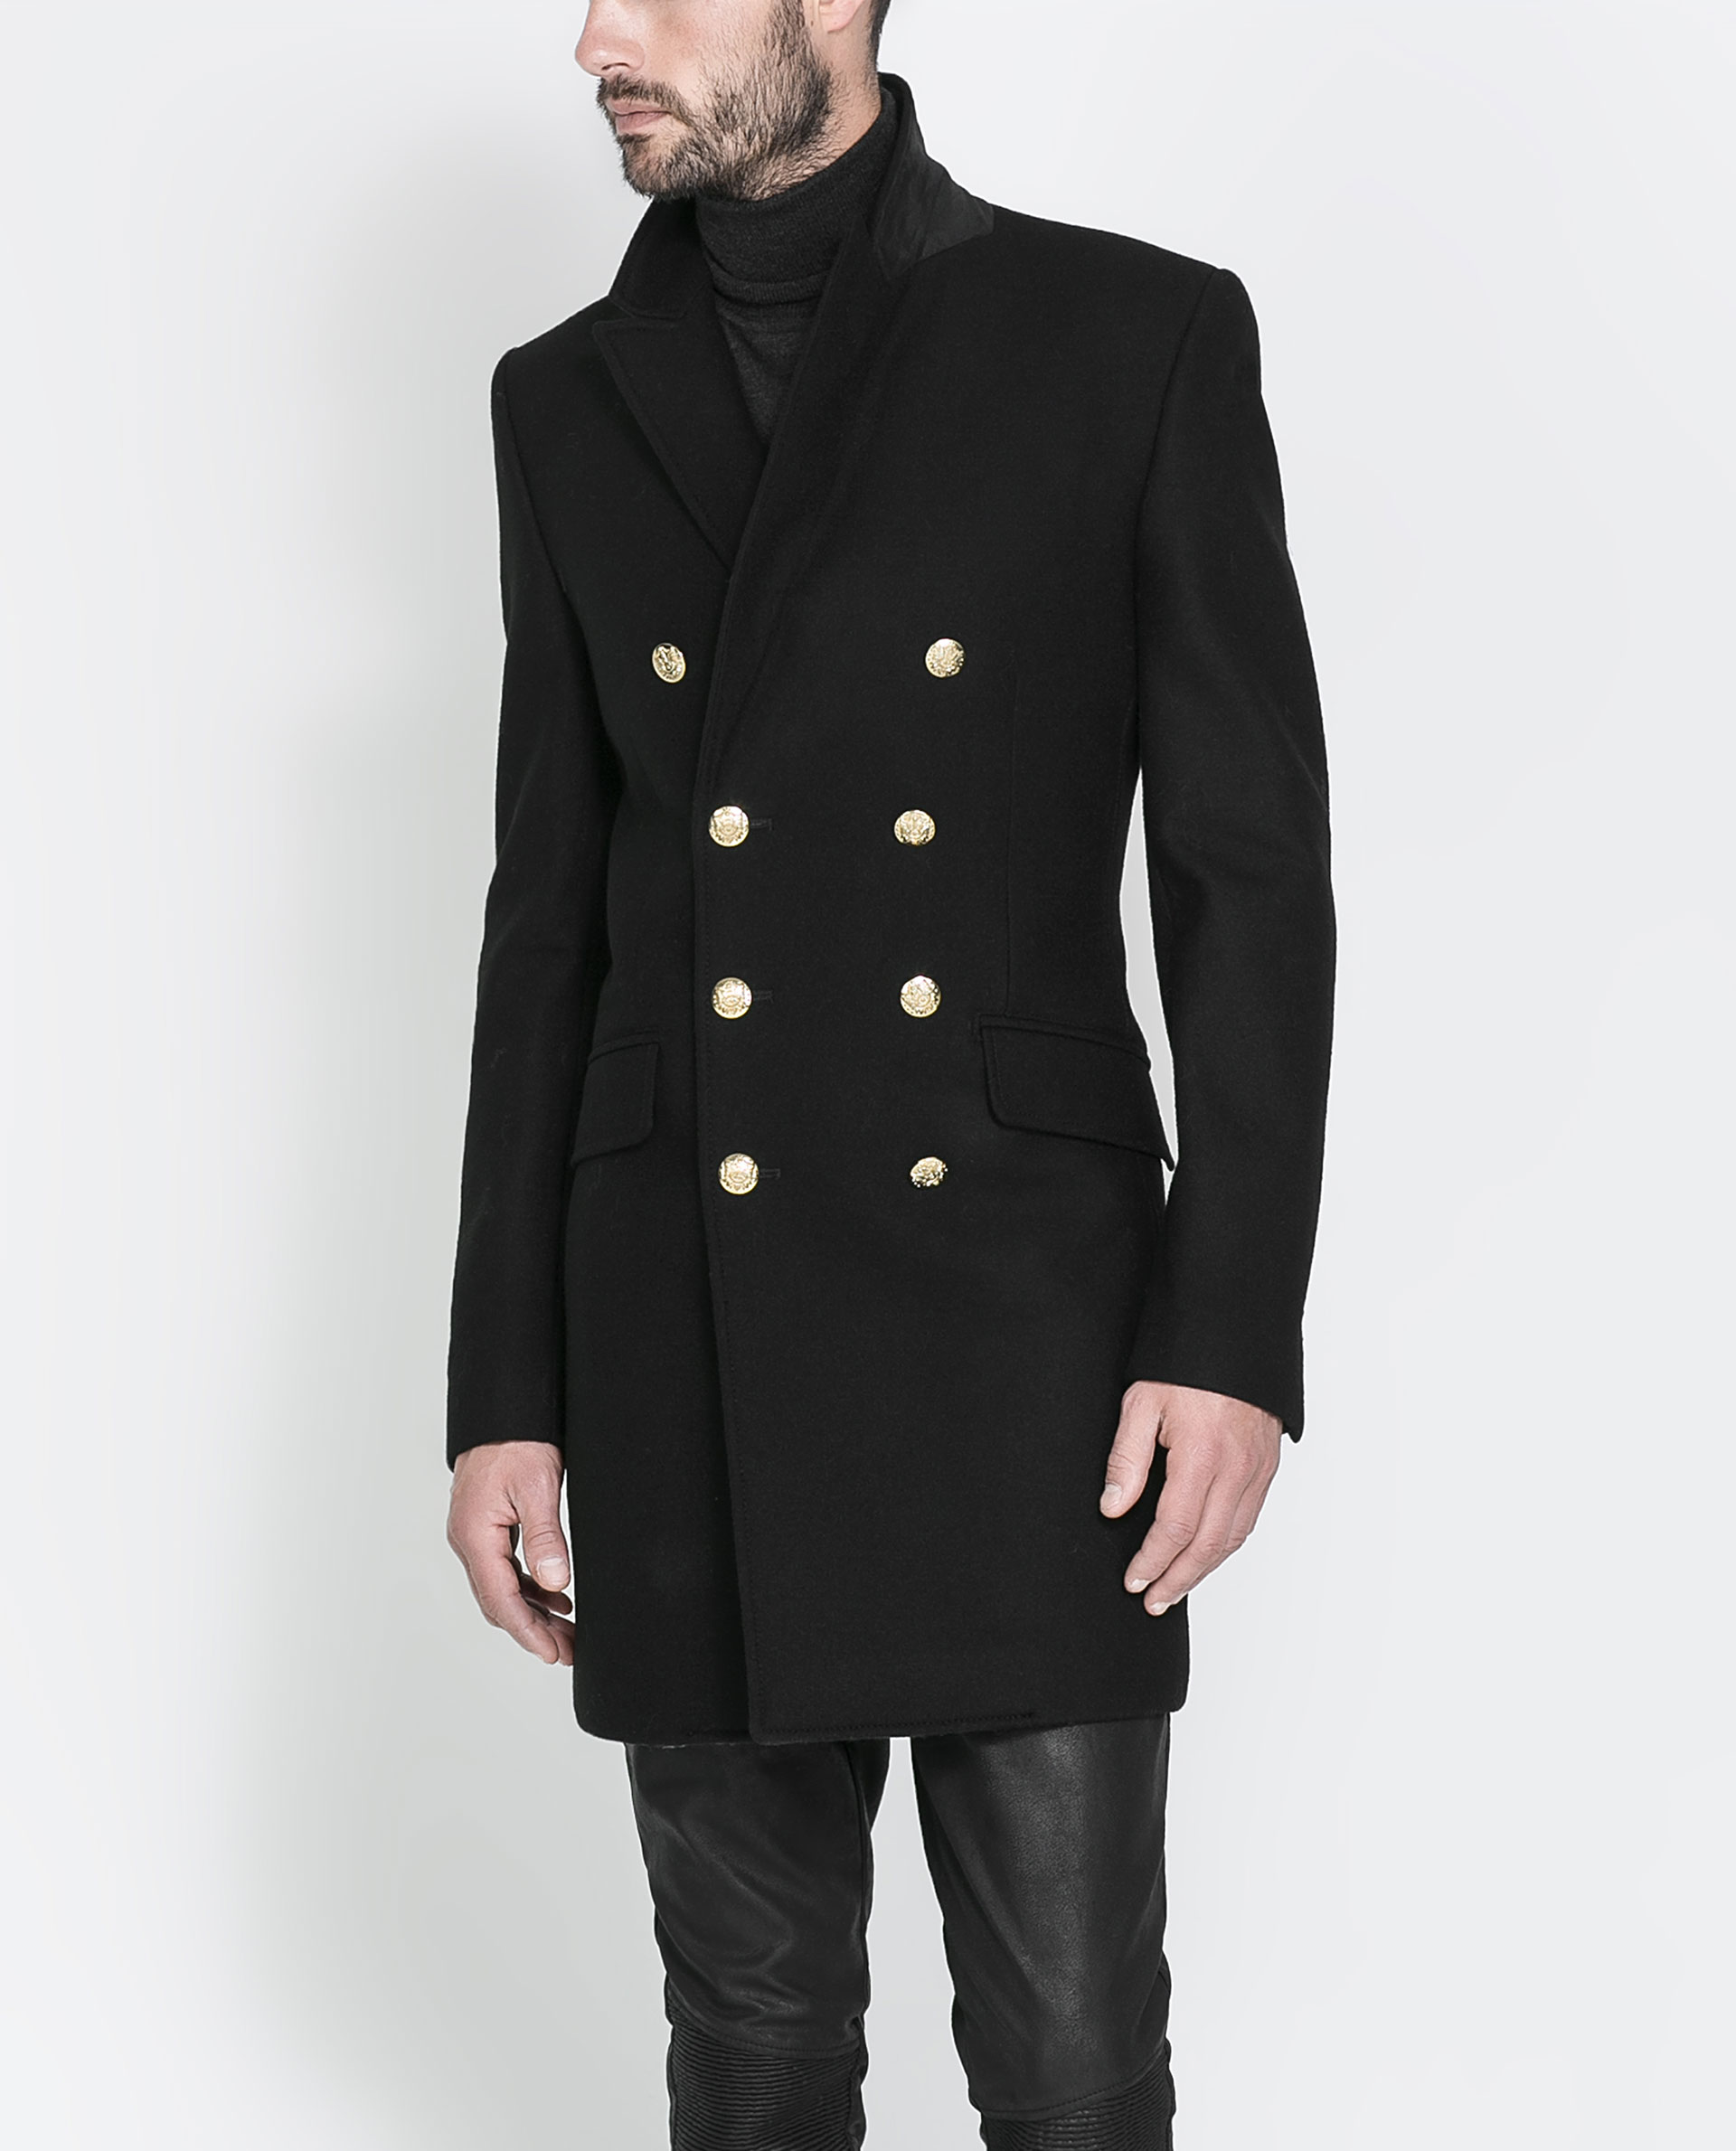 Пальто zara мужское. Zara man пальто Military Coat. Пальто бушлат мужское Zara. Пальто бушлат мужское 48-50 Zara.